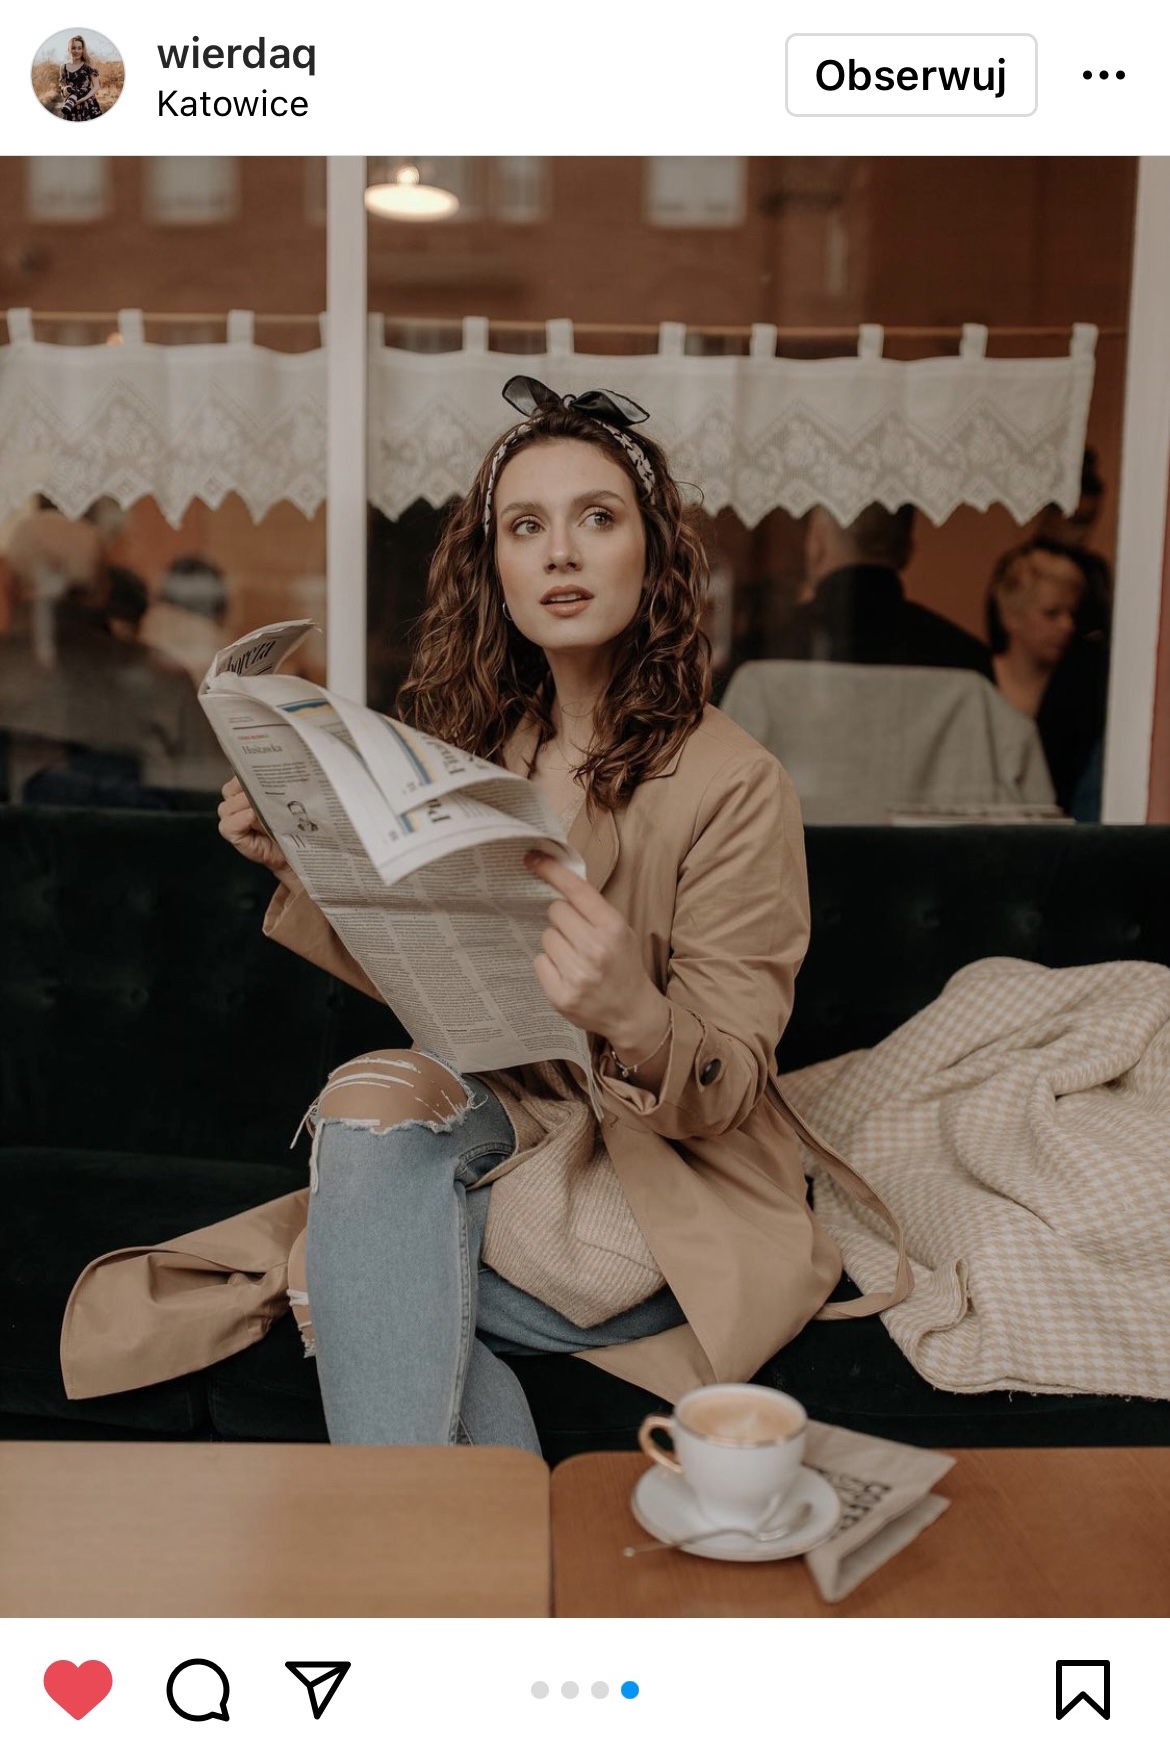 brunetka siedząca na sofie i czytająca gazetę